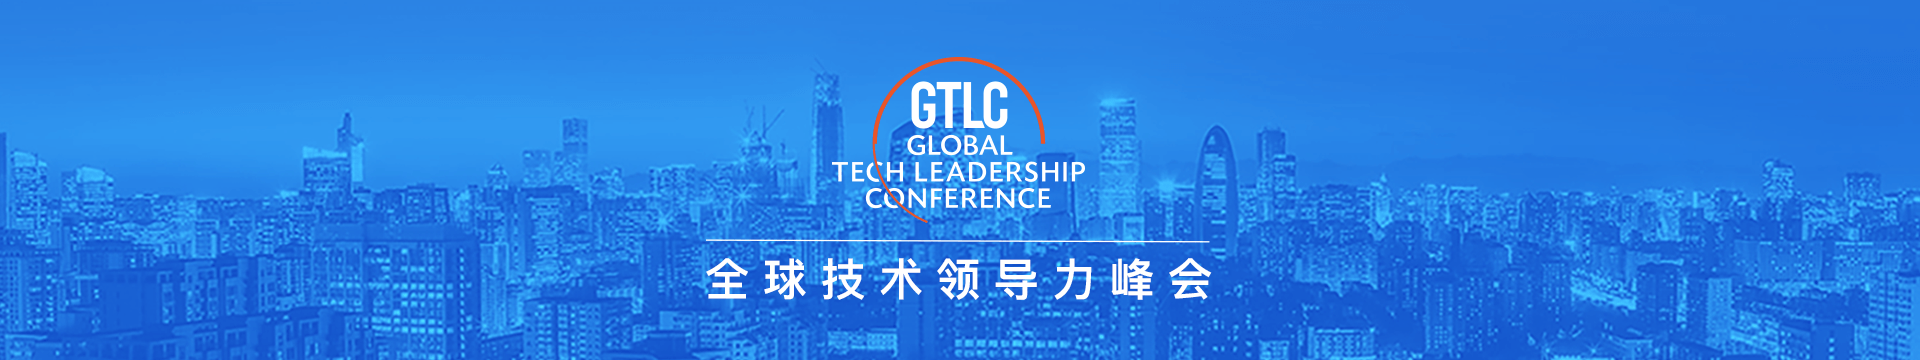 GTLC北京2021全球技术领导力峰会